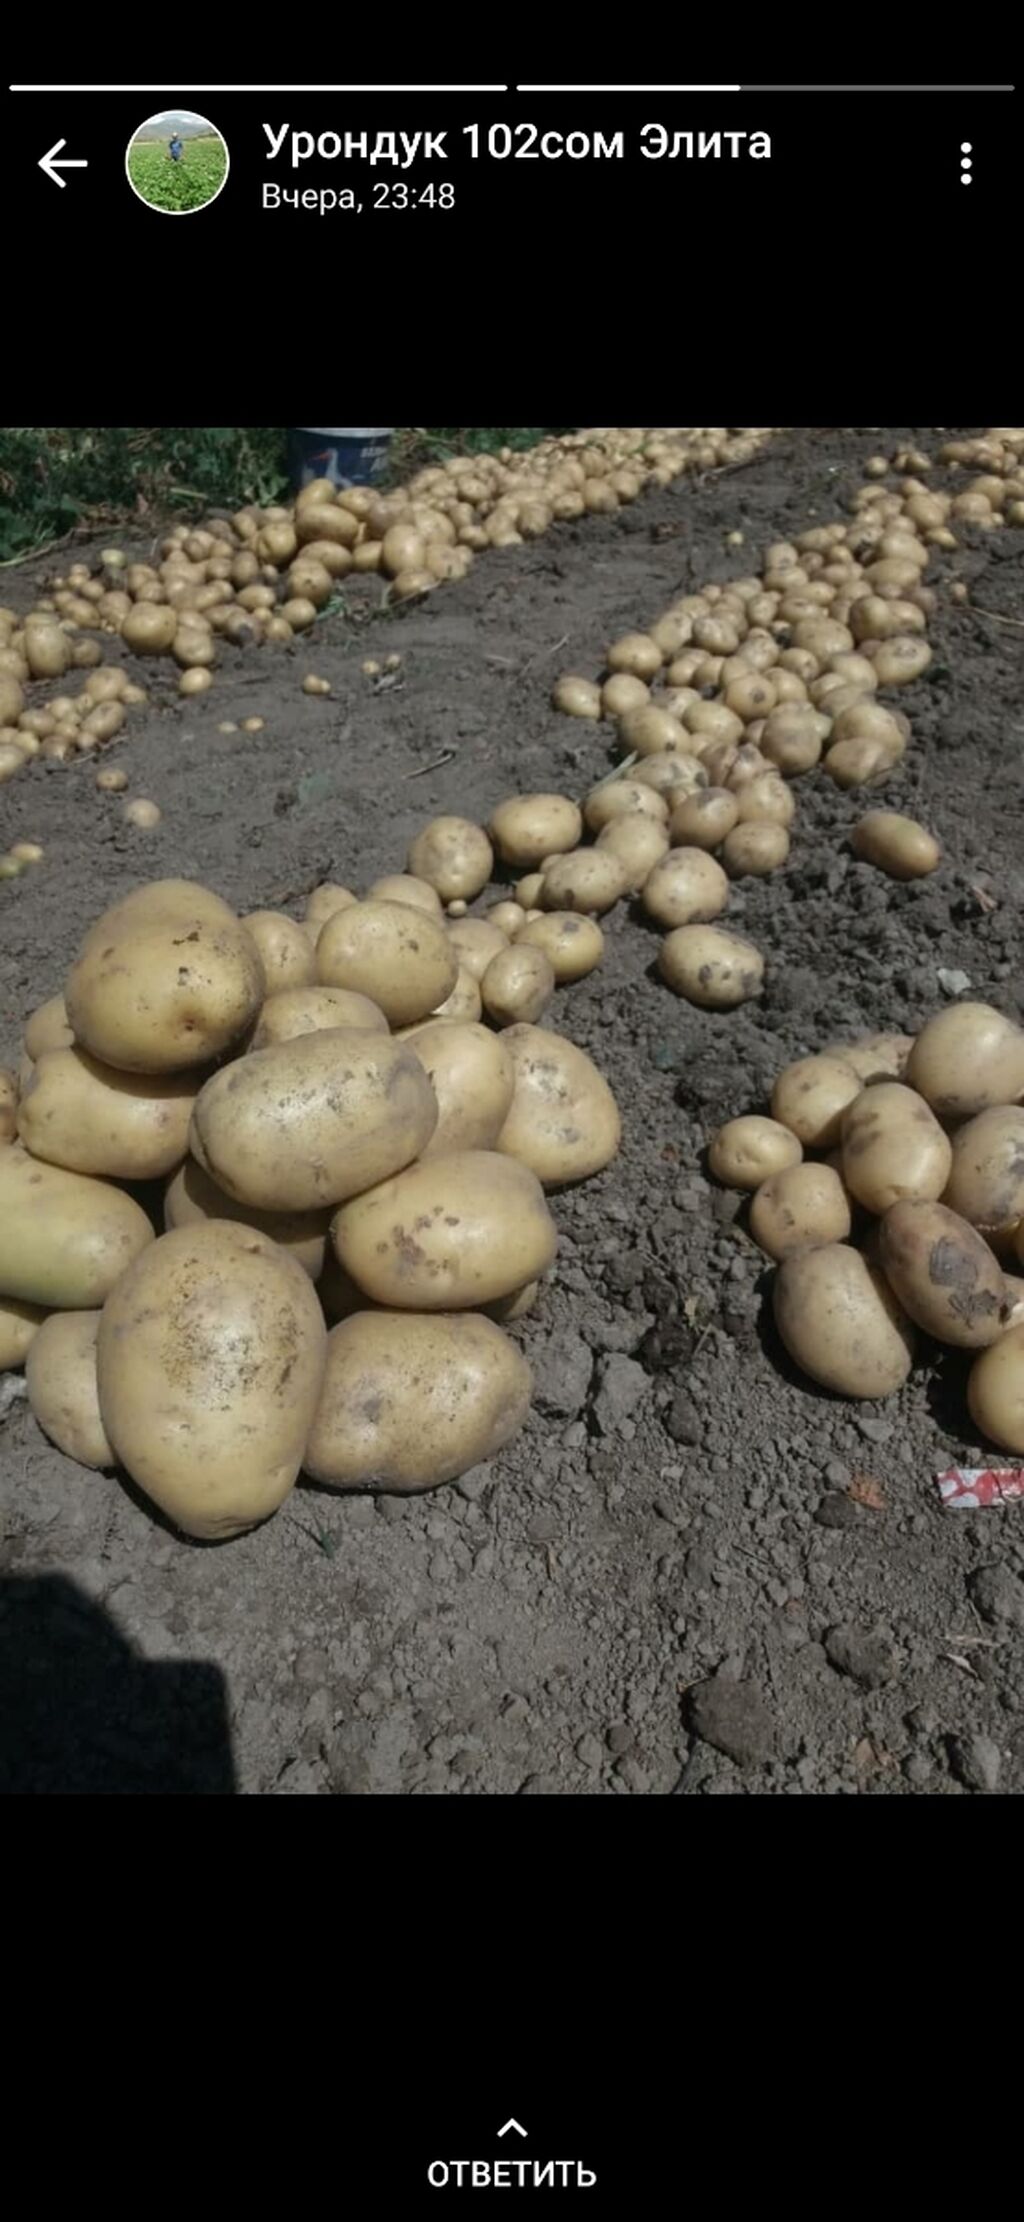 Картошка 5 рублей. Супер картошка. 6 + Картошка Калибр. Супер картошка Таджикистан. Картофель семенной в сетках фото.